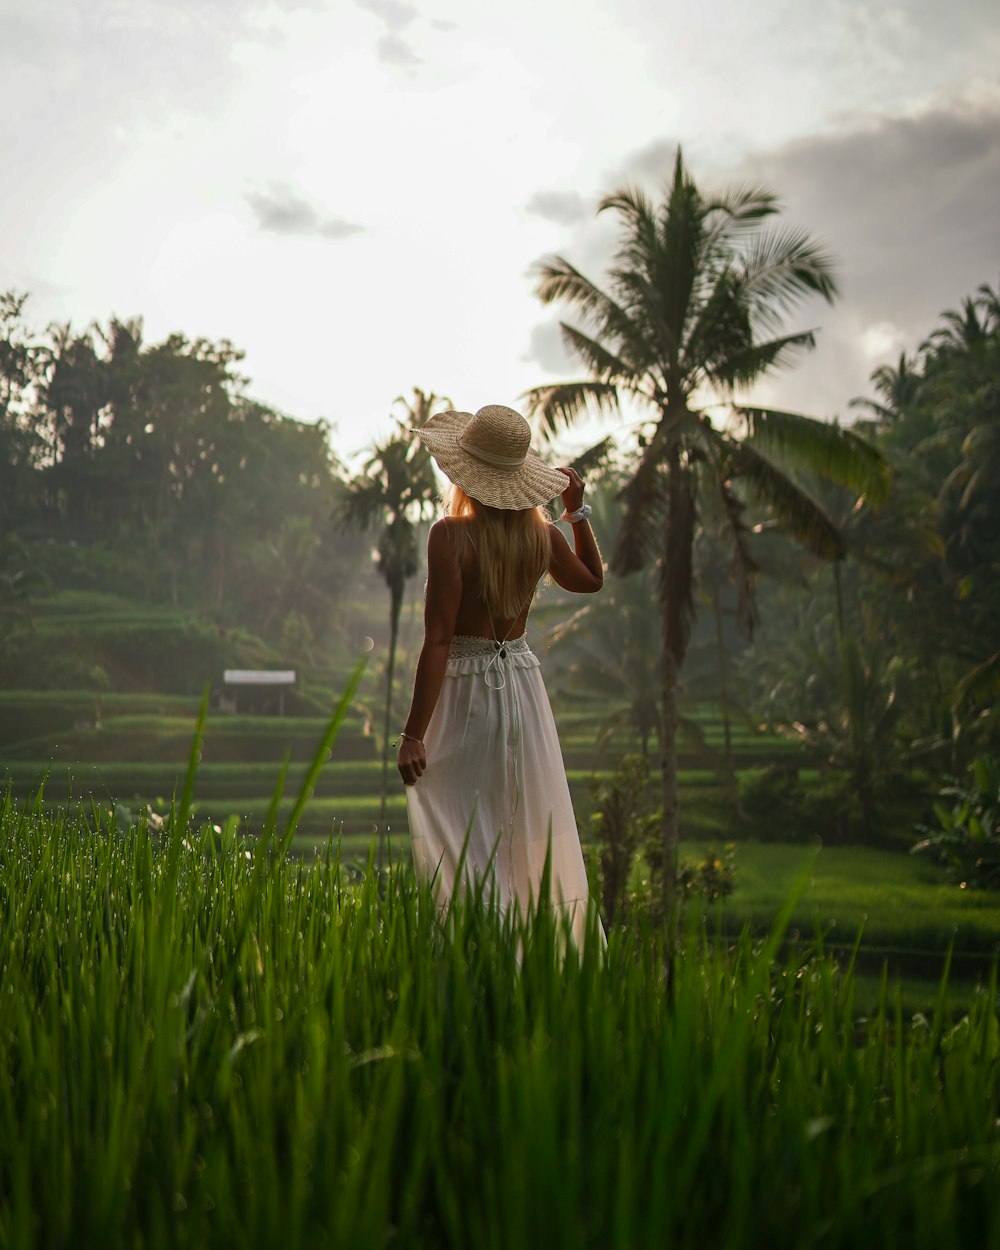 Une femme en robe blanche et chapeau marchant dans un champ verdoyant